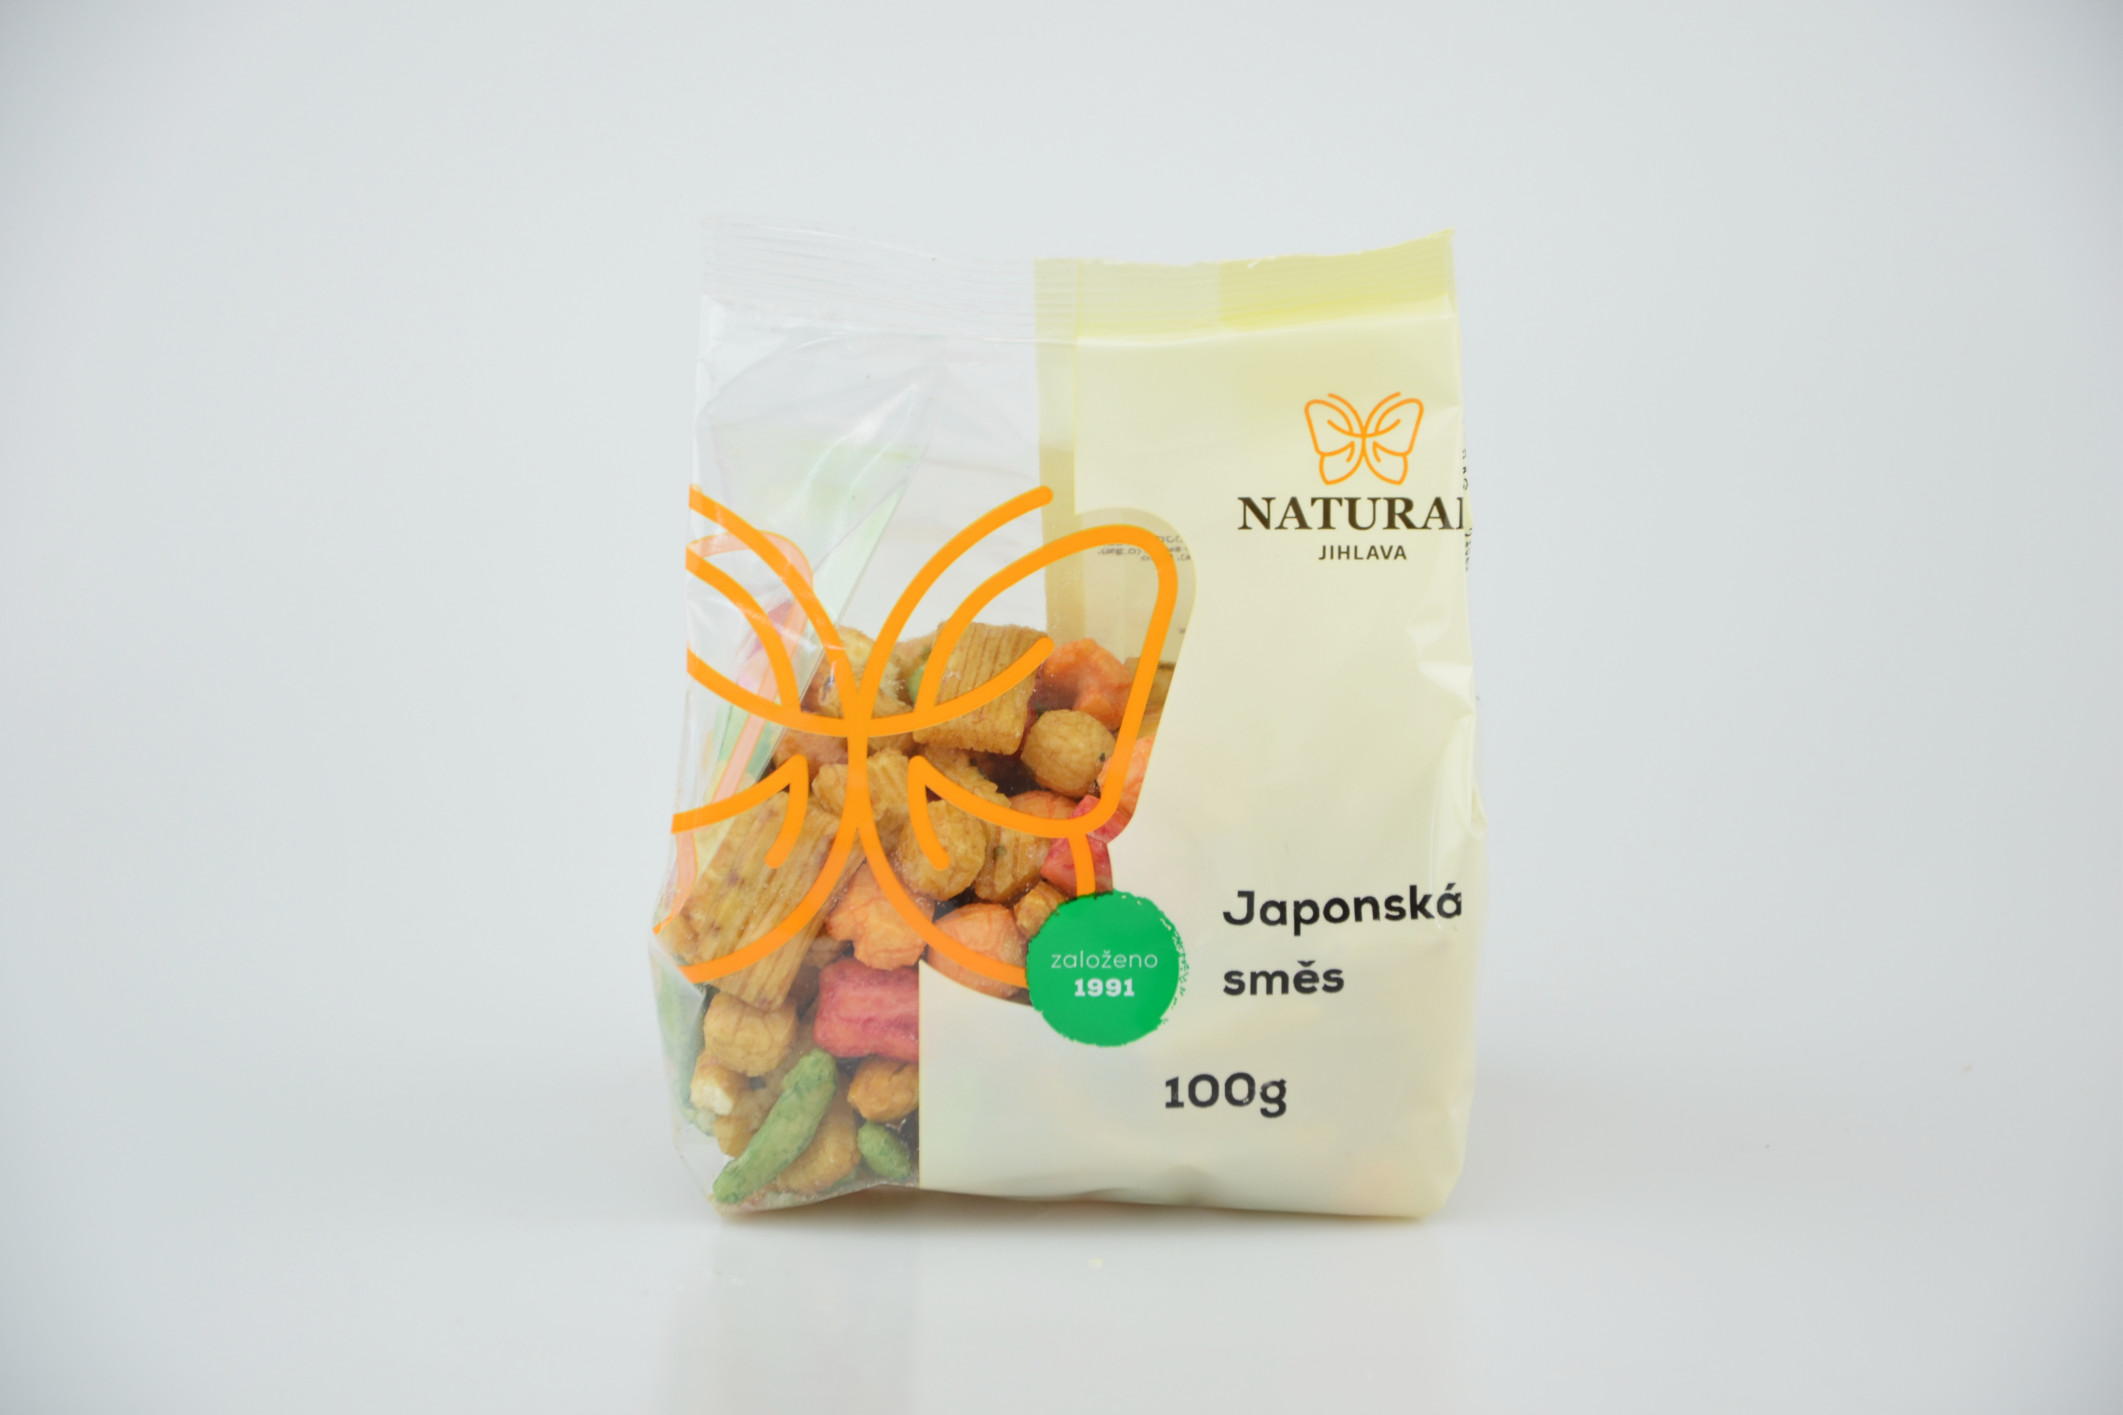 Natural Jihlava Japonská směs - Natural 100g